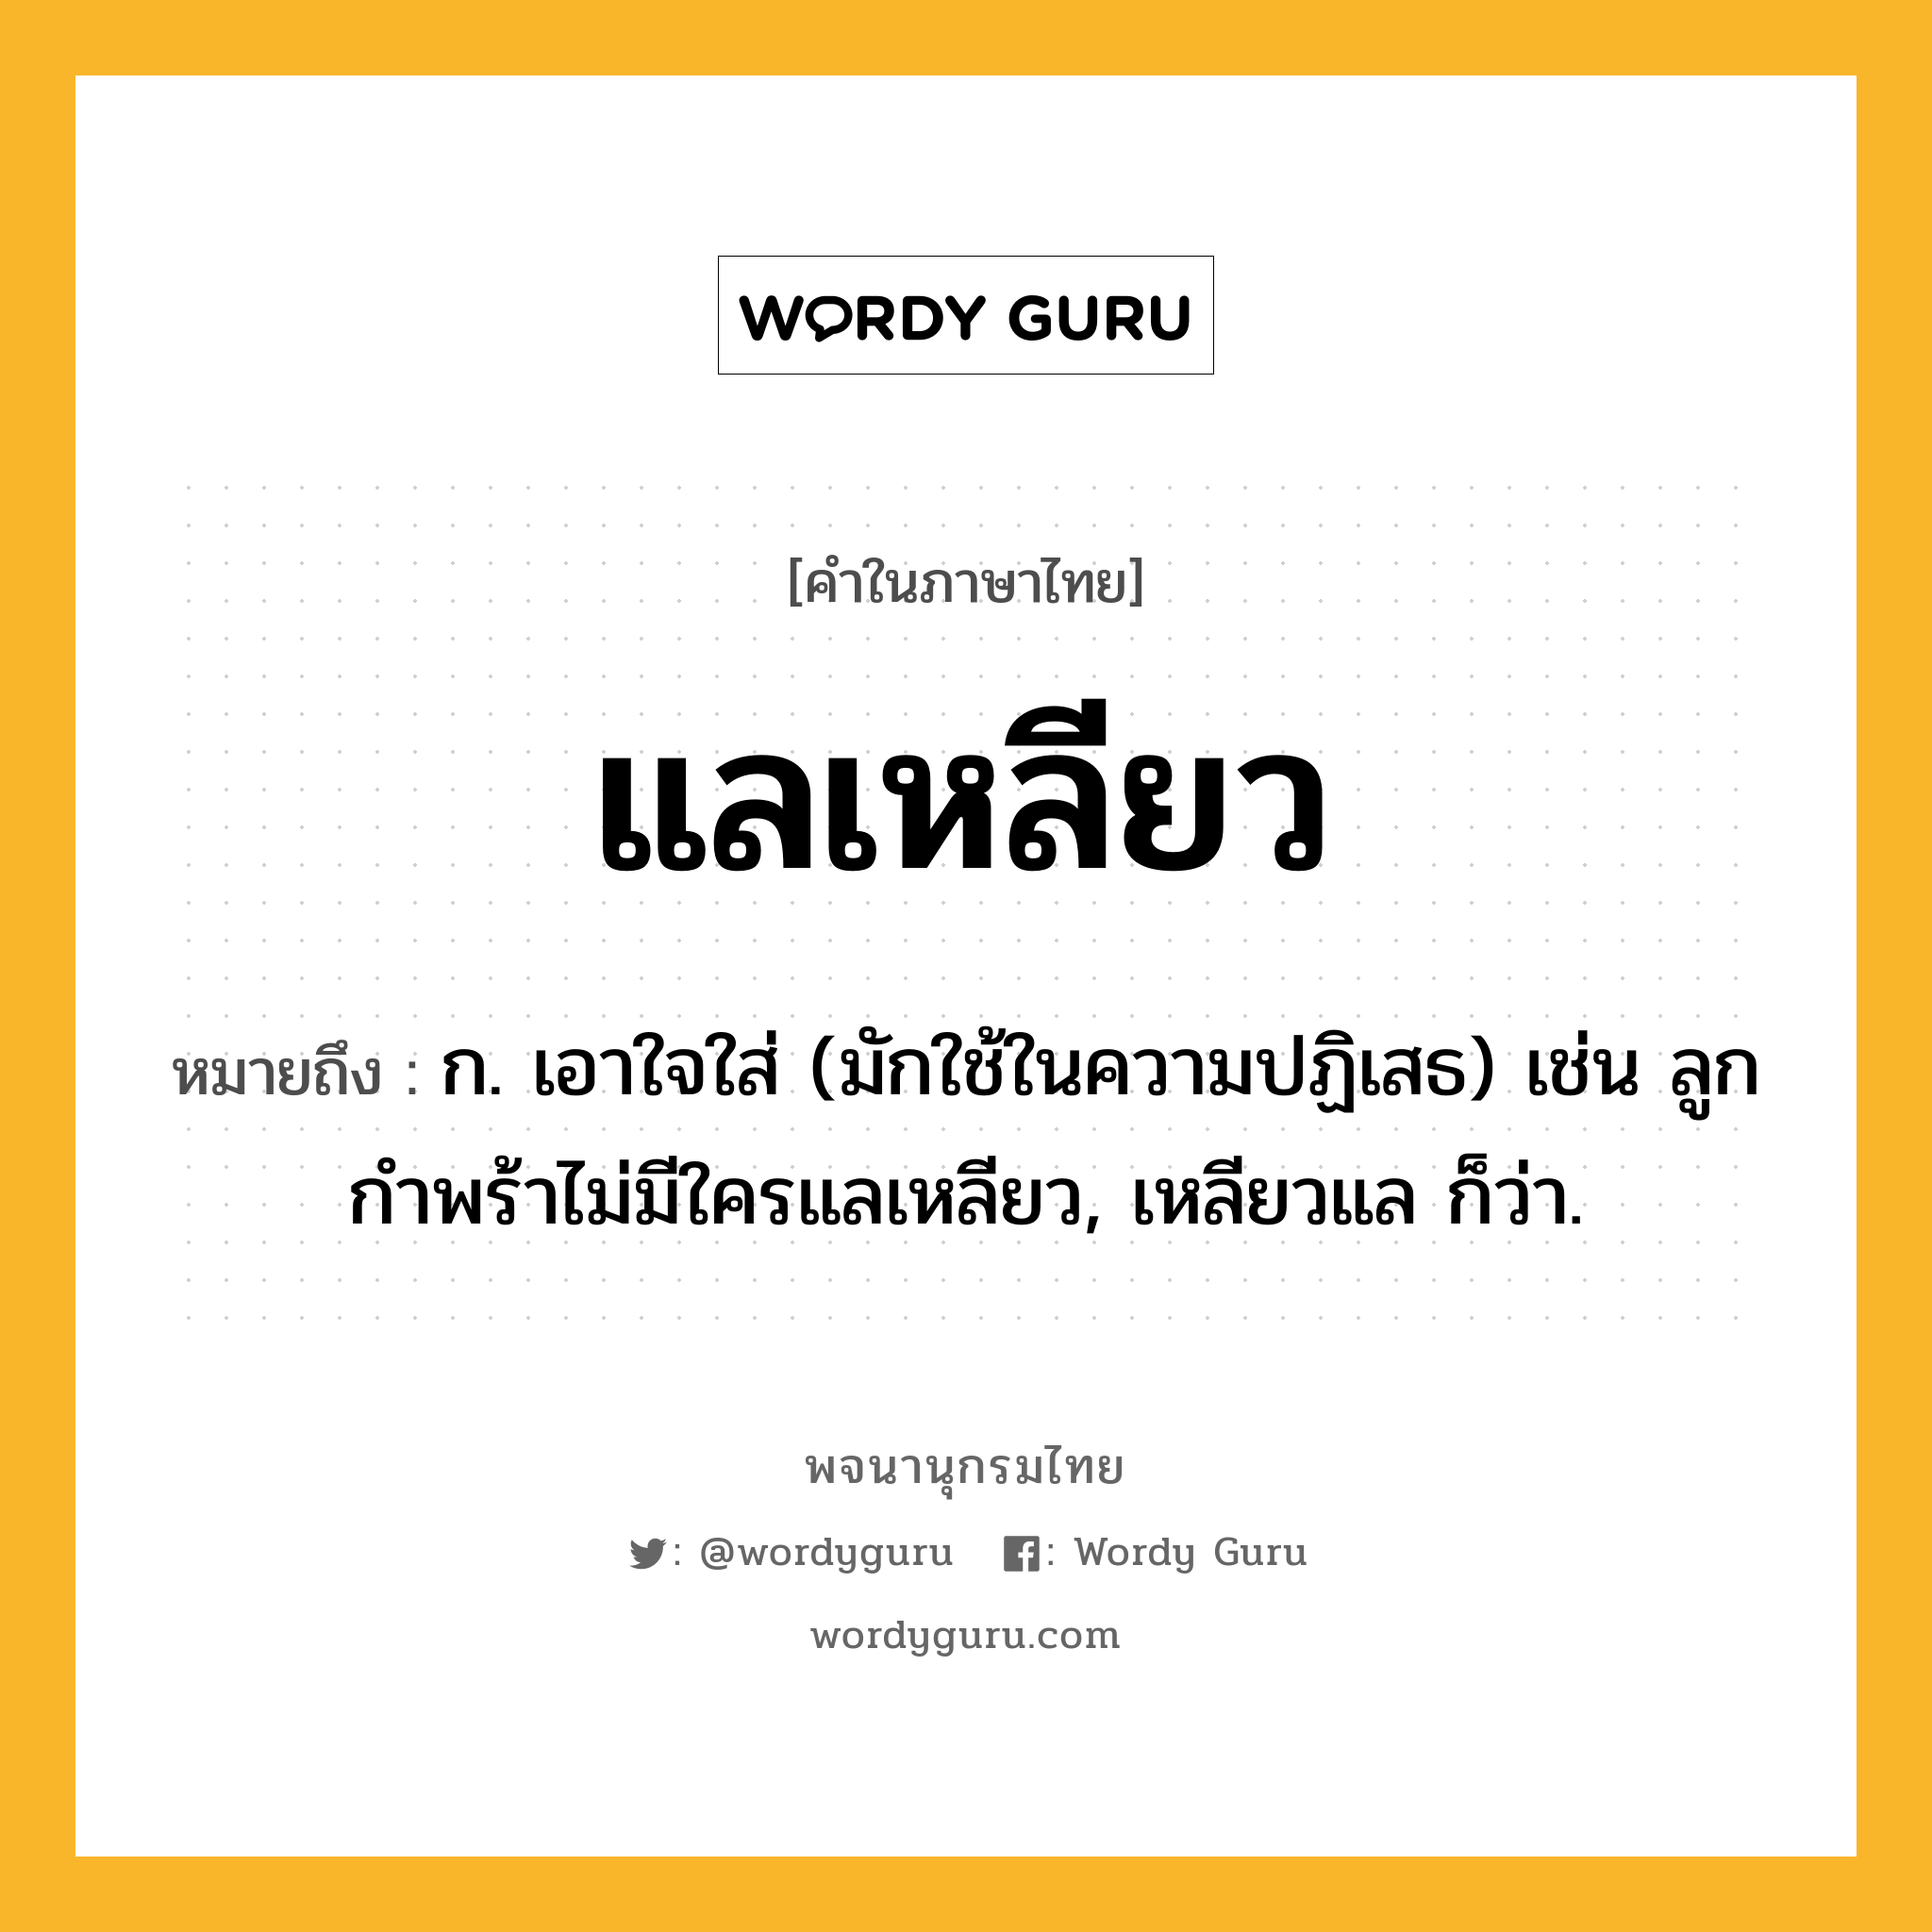 แลเหลียว ความหมาย หมายถึงอะไร?, คำในภาษาไทย แลเหลียว หมายถึง ก. เอาใจใส่ (มักใช้ในความปฏิเสธ) เช่น ลูกกำพร้าไม่มีใครแลเหลียว, เหลียวแล ก็ว่า.